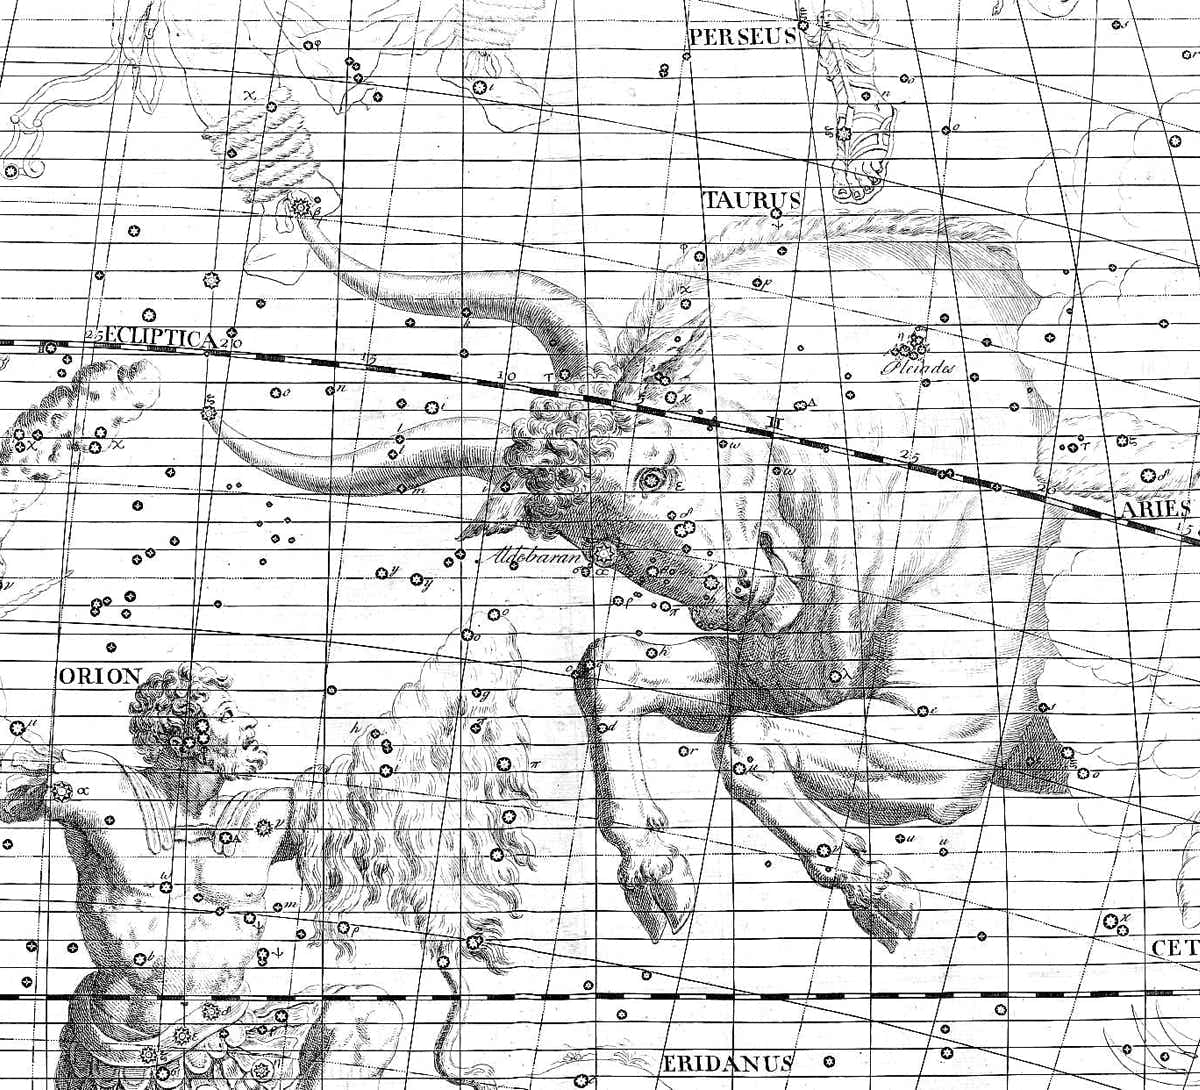 Taurus on Flamsteed's Atlas Coelestis